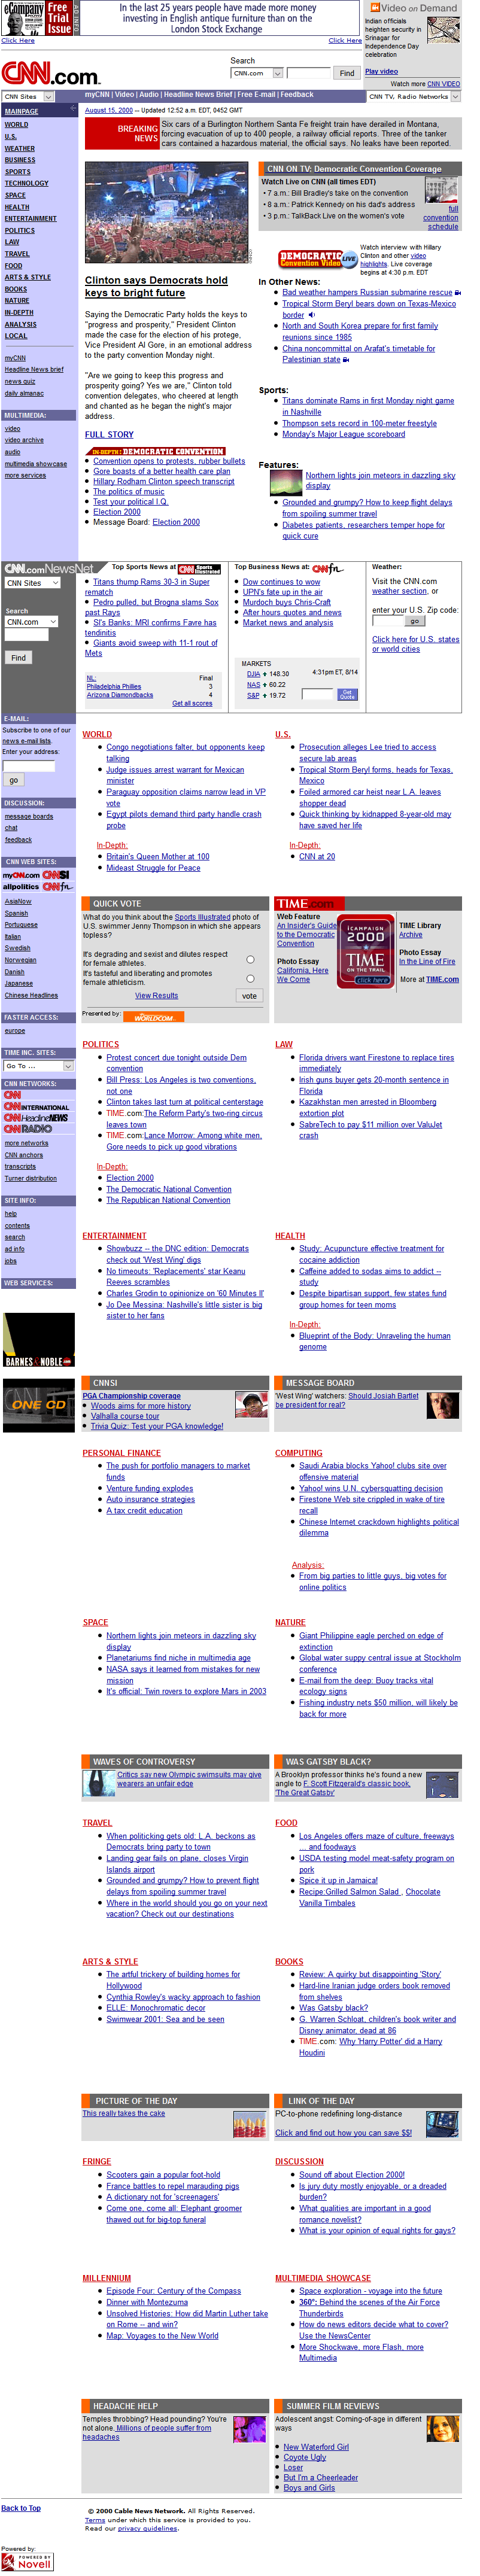 CNN.com in 2000